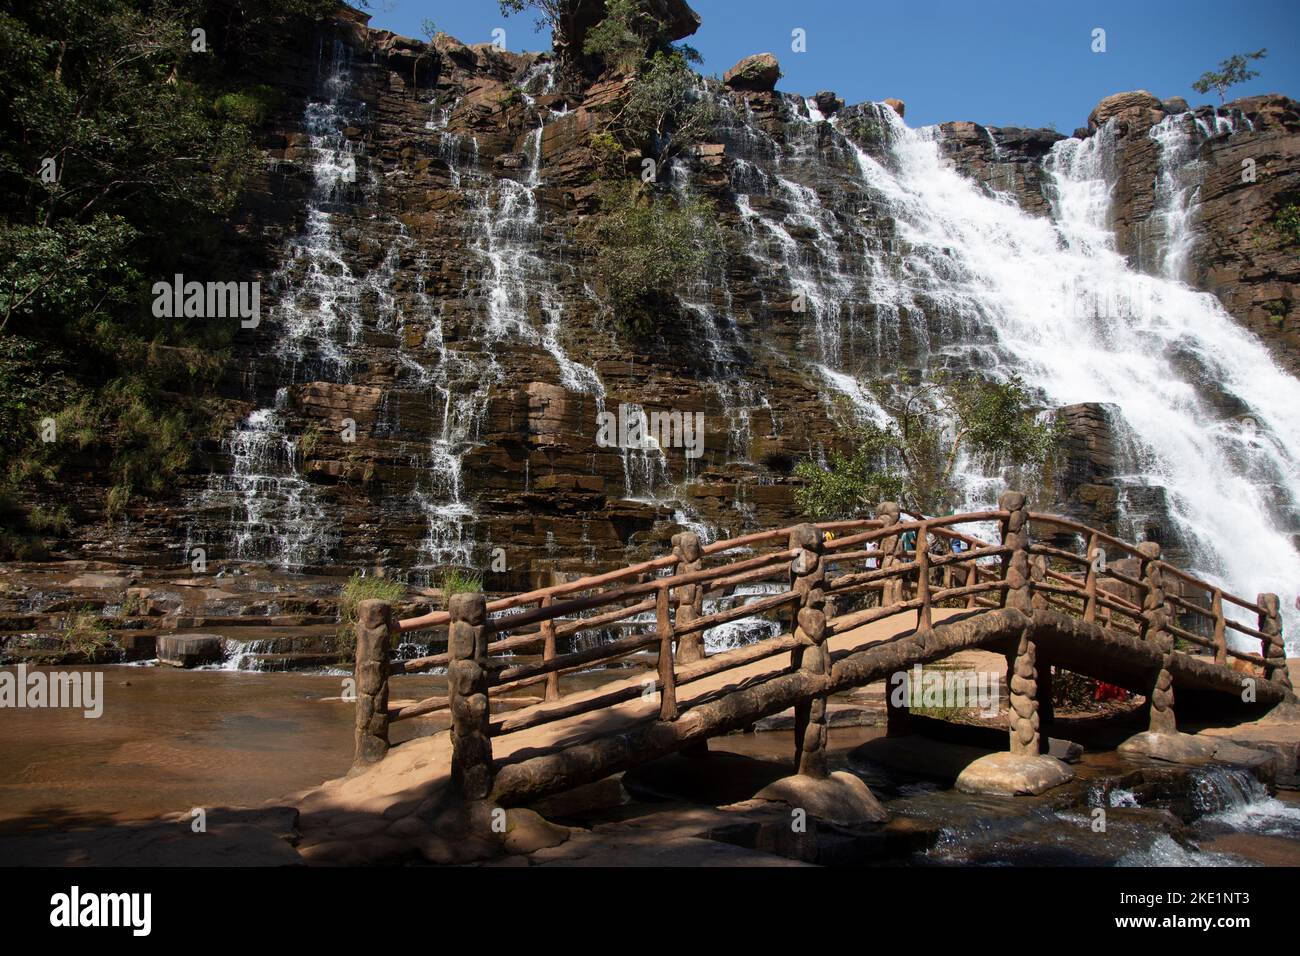 La cascada Tirathgarh se encuentra en el Parque Nacional del Valle de Kanger. Una cascada blanca, esta es una de las atracciones importantes de Jagdalpur Foto de stock